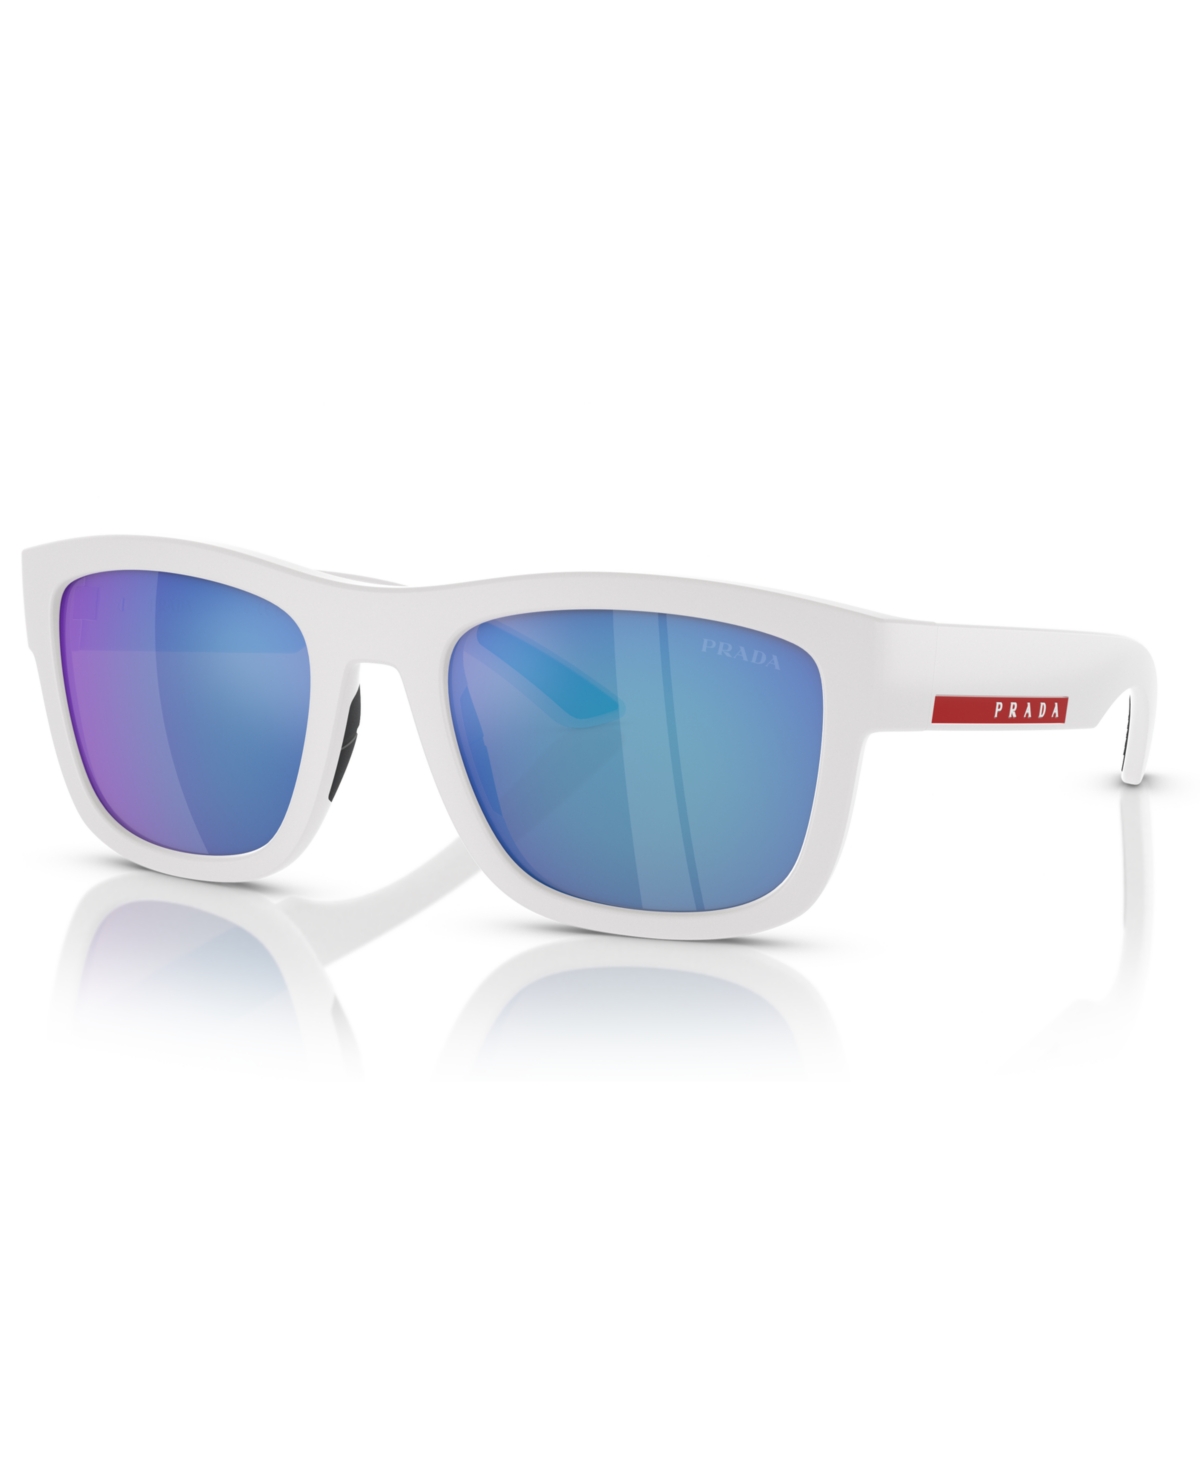 Men's Sunglasses, Ps 01ZS - White Rubber